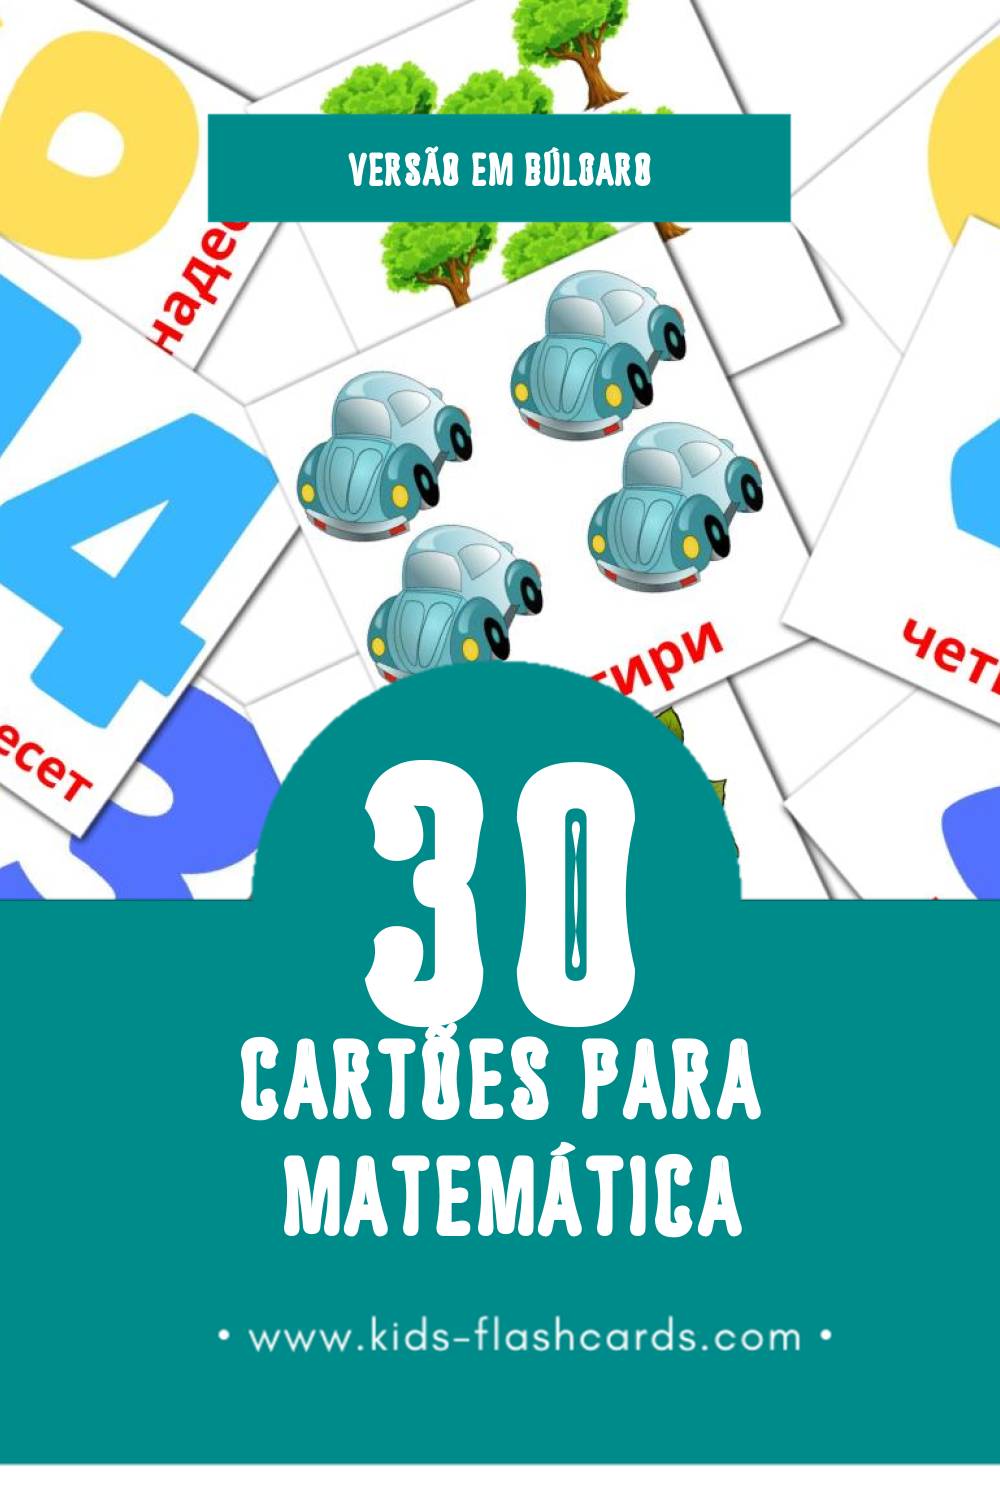 Flashcards de Математика Visuais para Toddlers (30 cartões em Búlgaro)